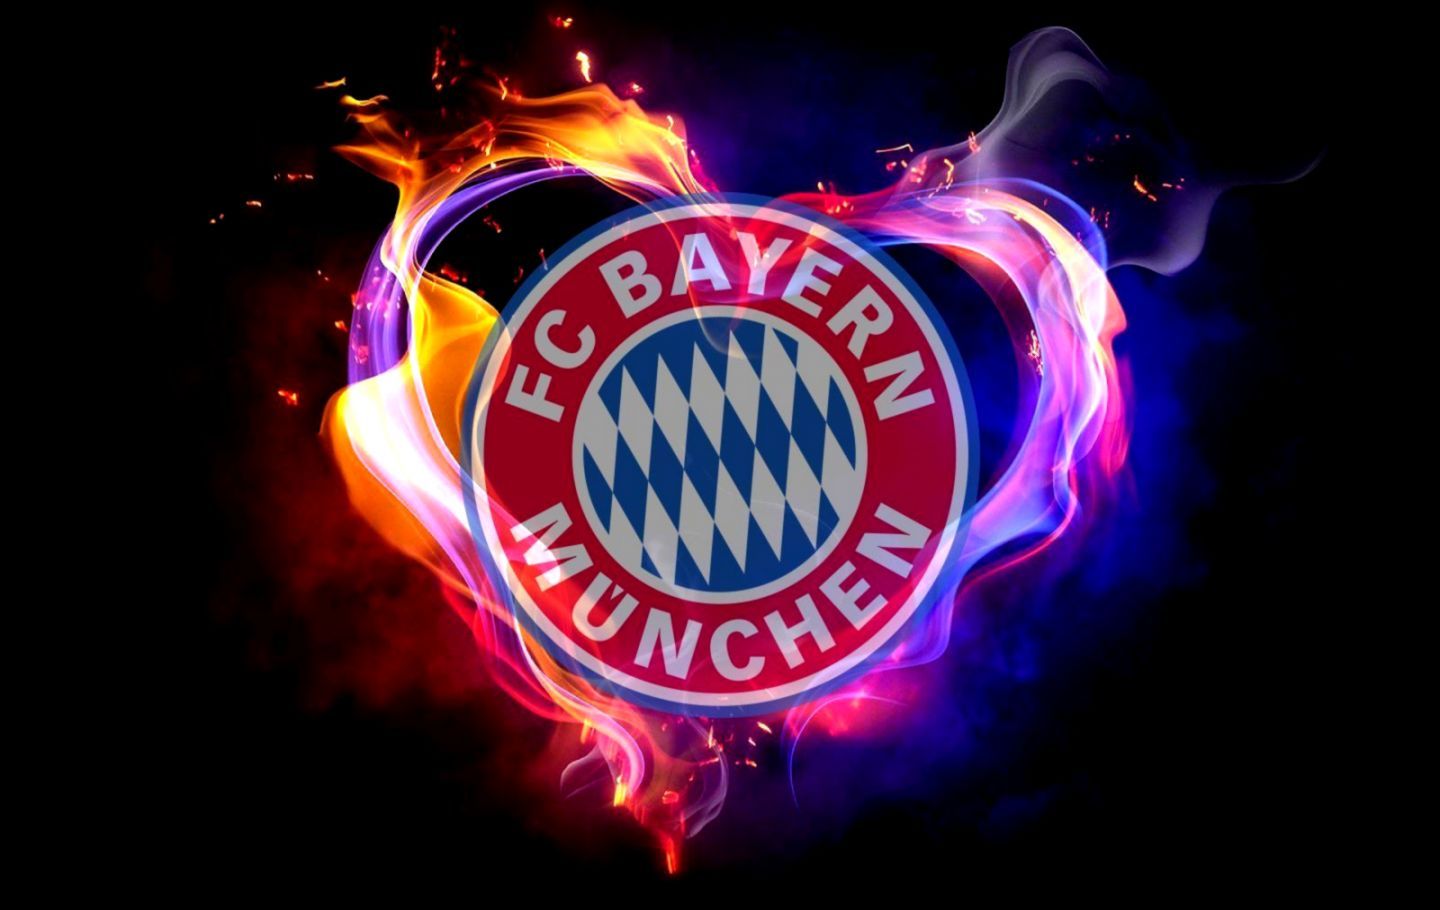 Bayern Munich Wallpaper. My Sims 3 Downloads